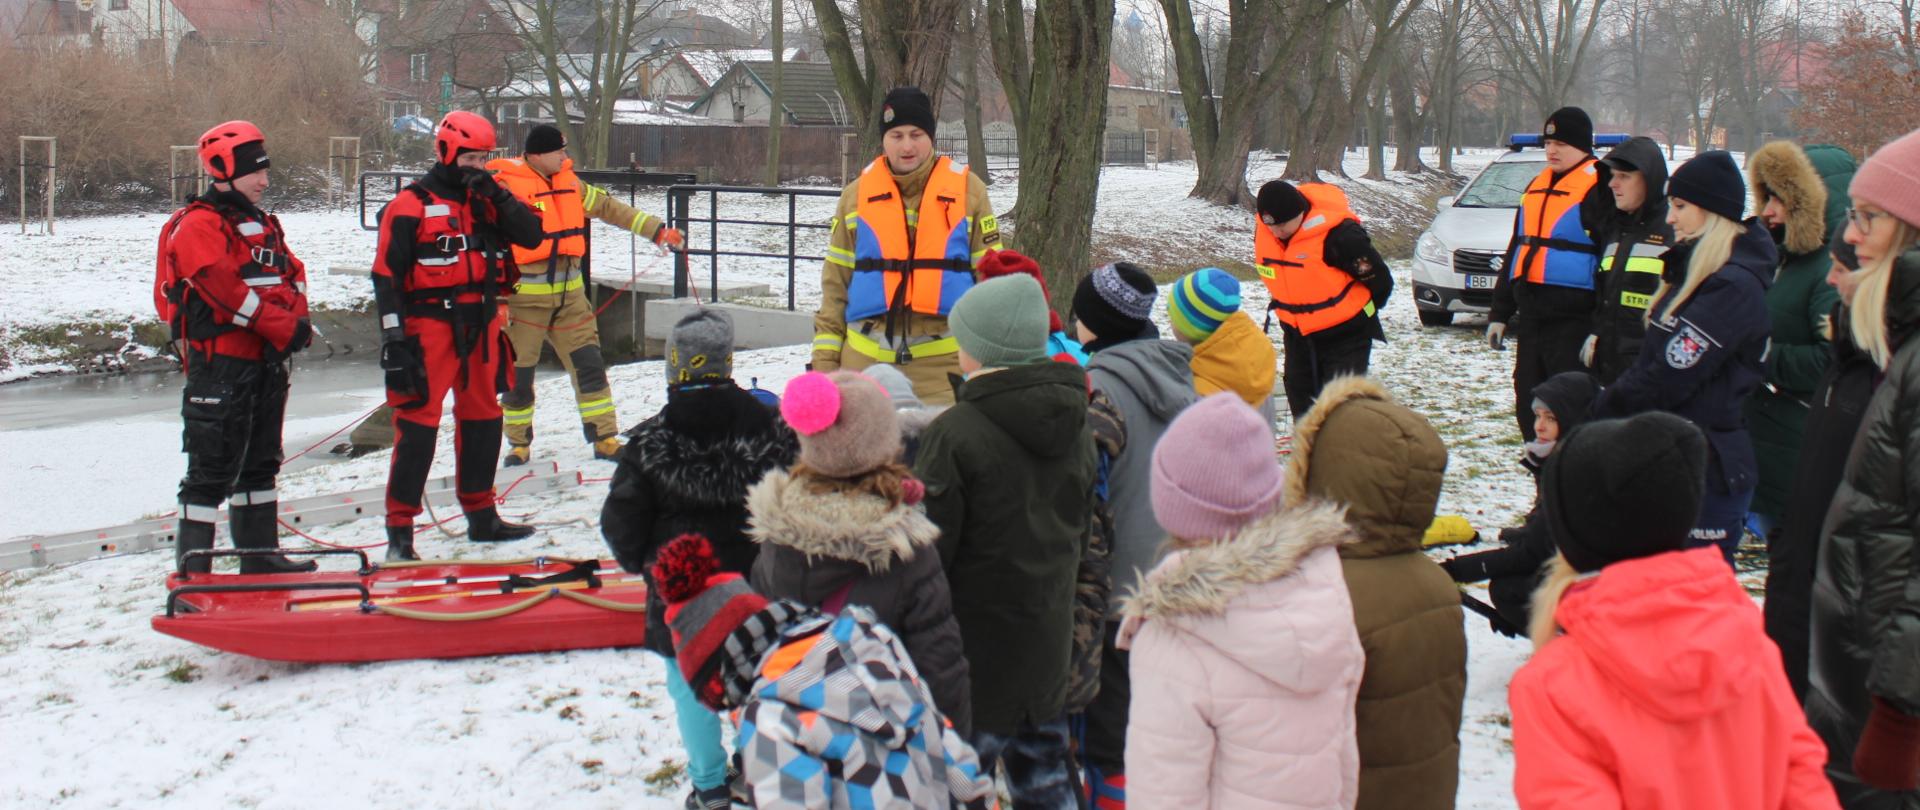 Zdjęcia przedstawia funkcjonariuszy straży pożarnej omawiających pokaz ćwiczeń lodowych dzieciom